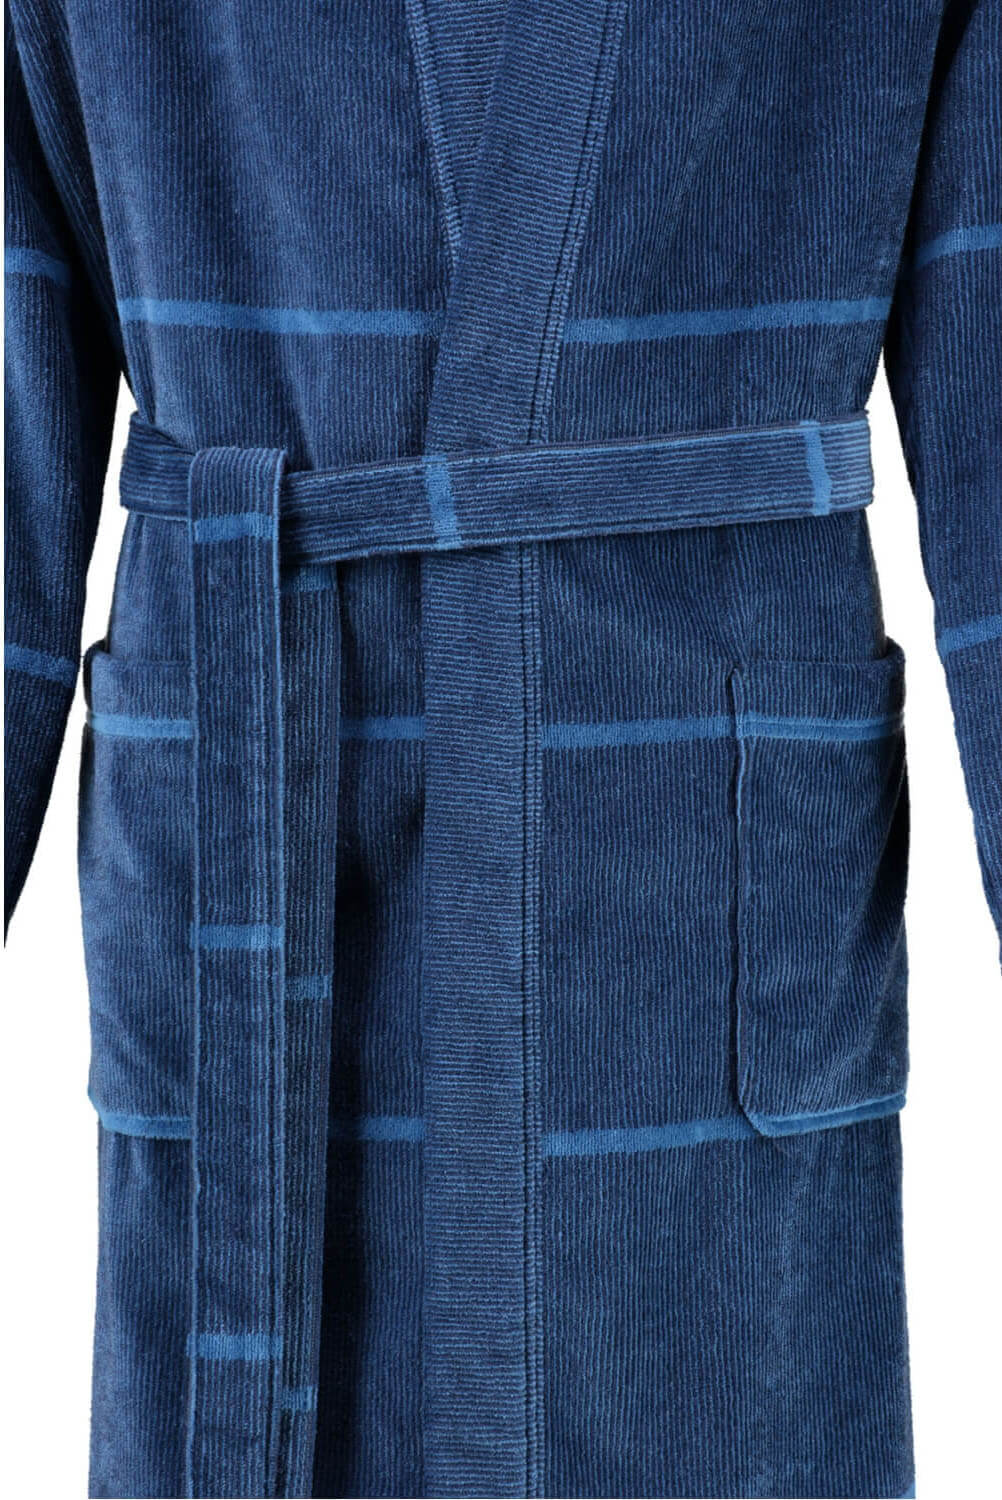 Мужской халат Cawo Kimono Blau ☞ Размер: 56